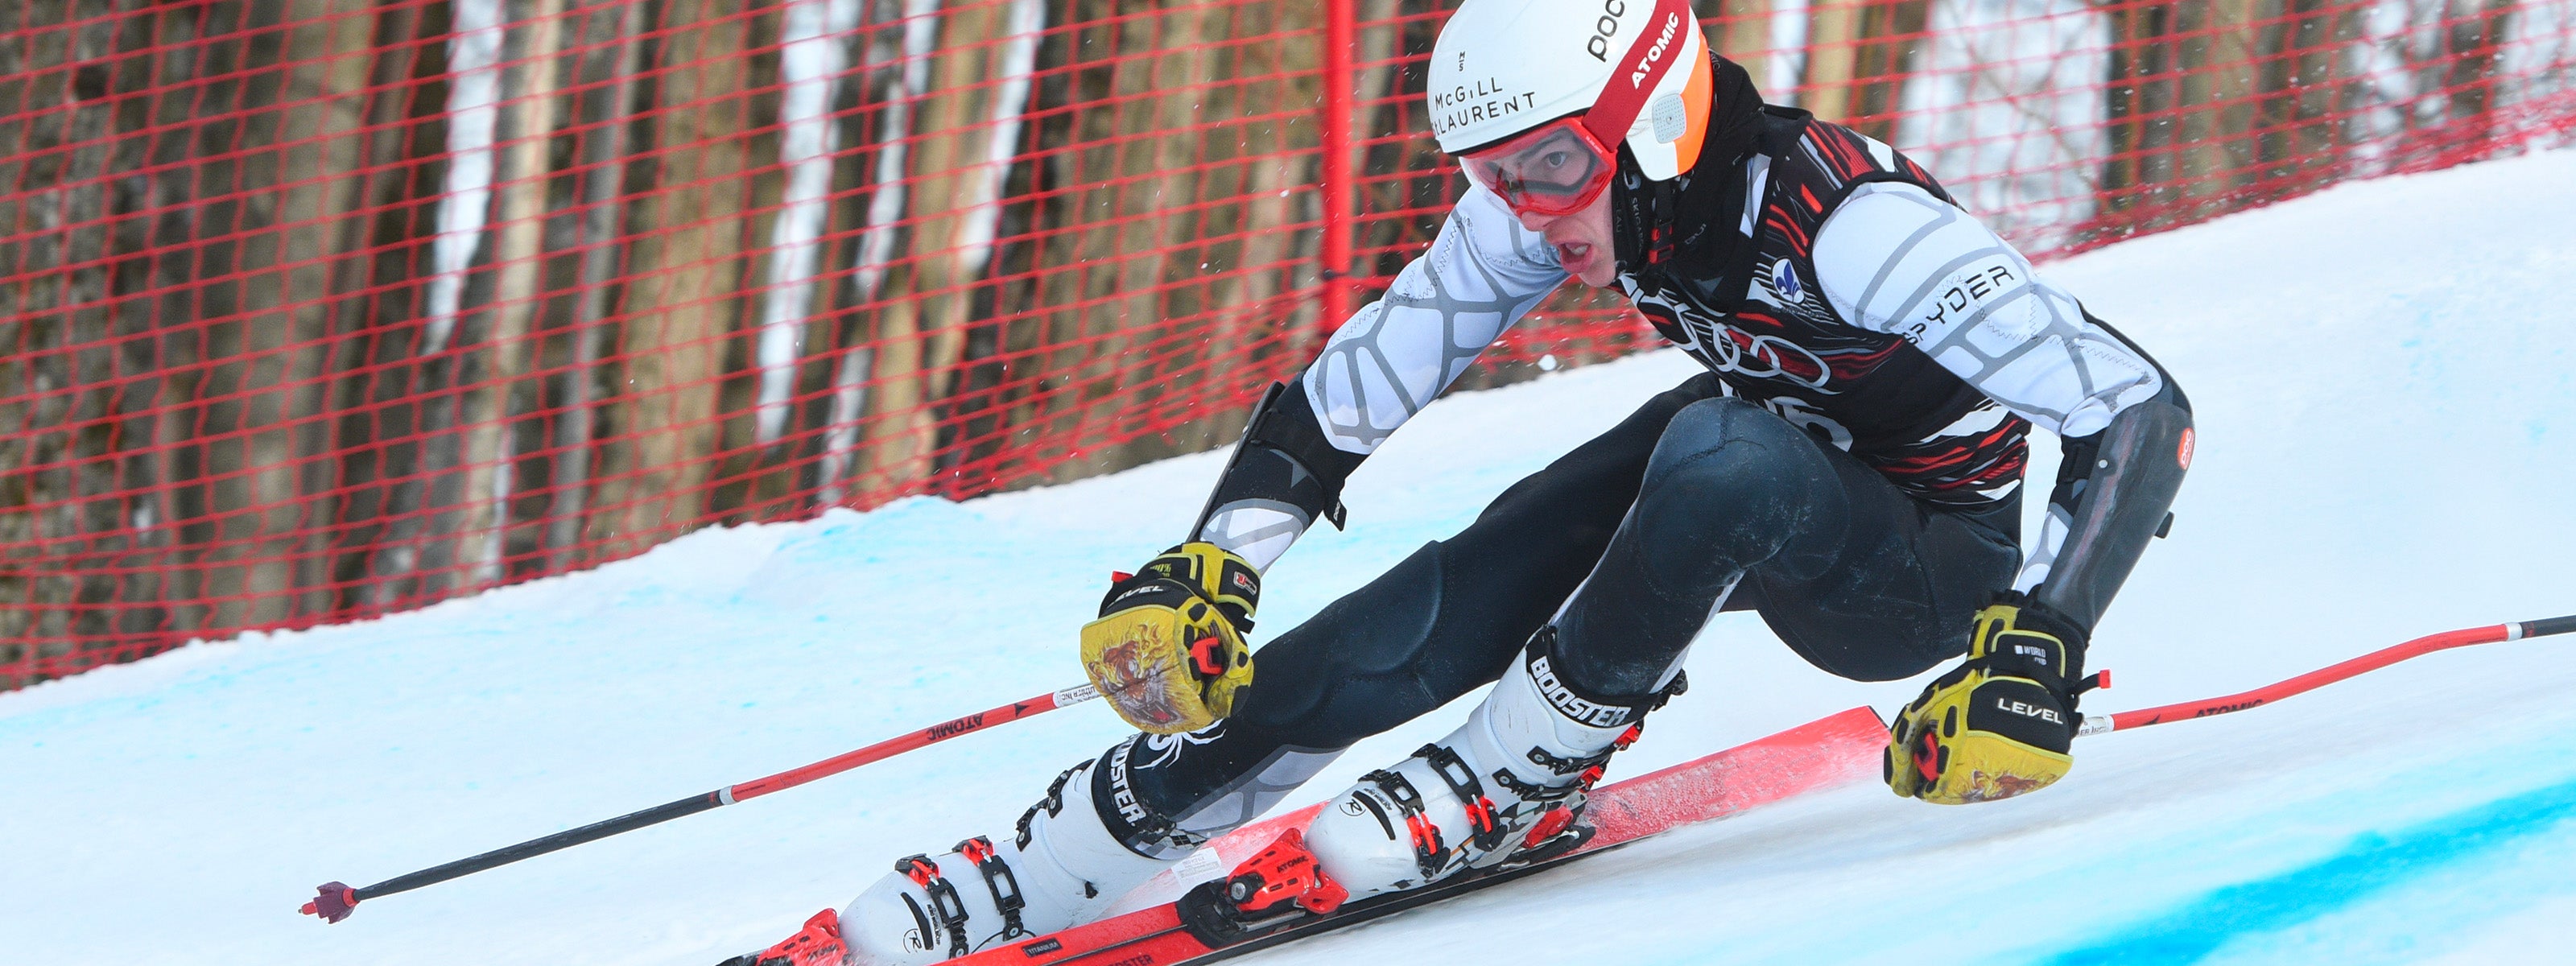 Protection de ski : protections pour le ski de slalom